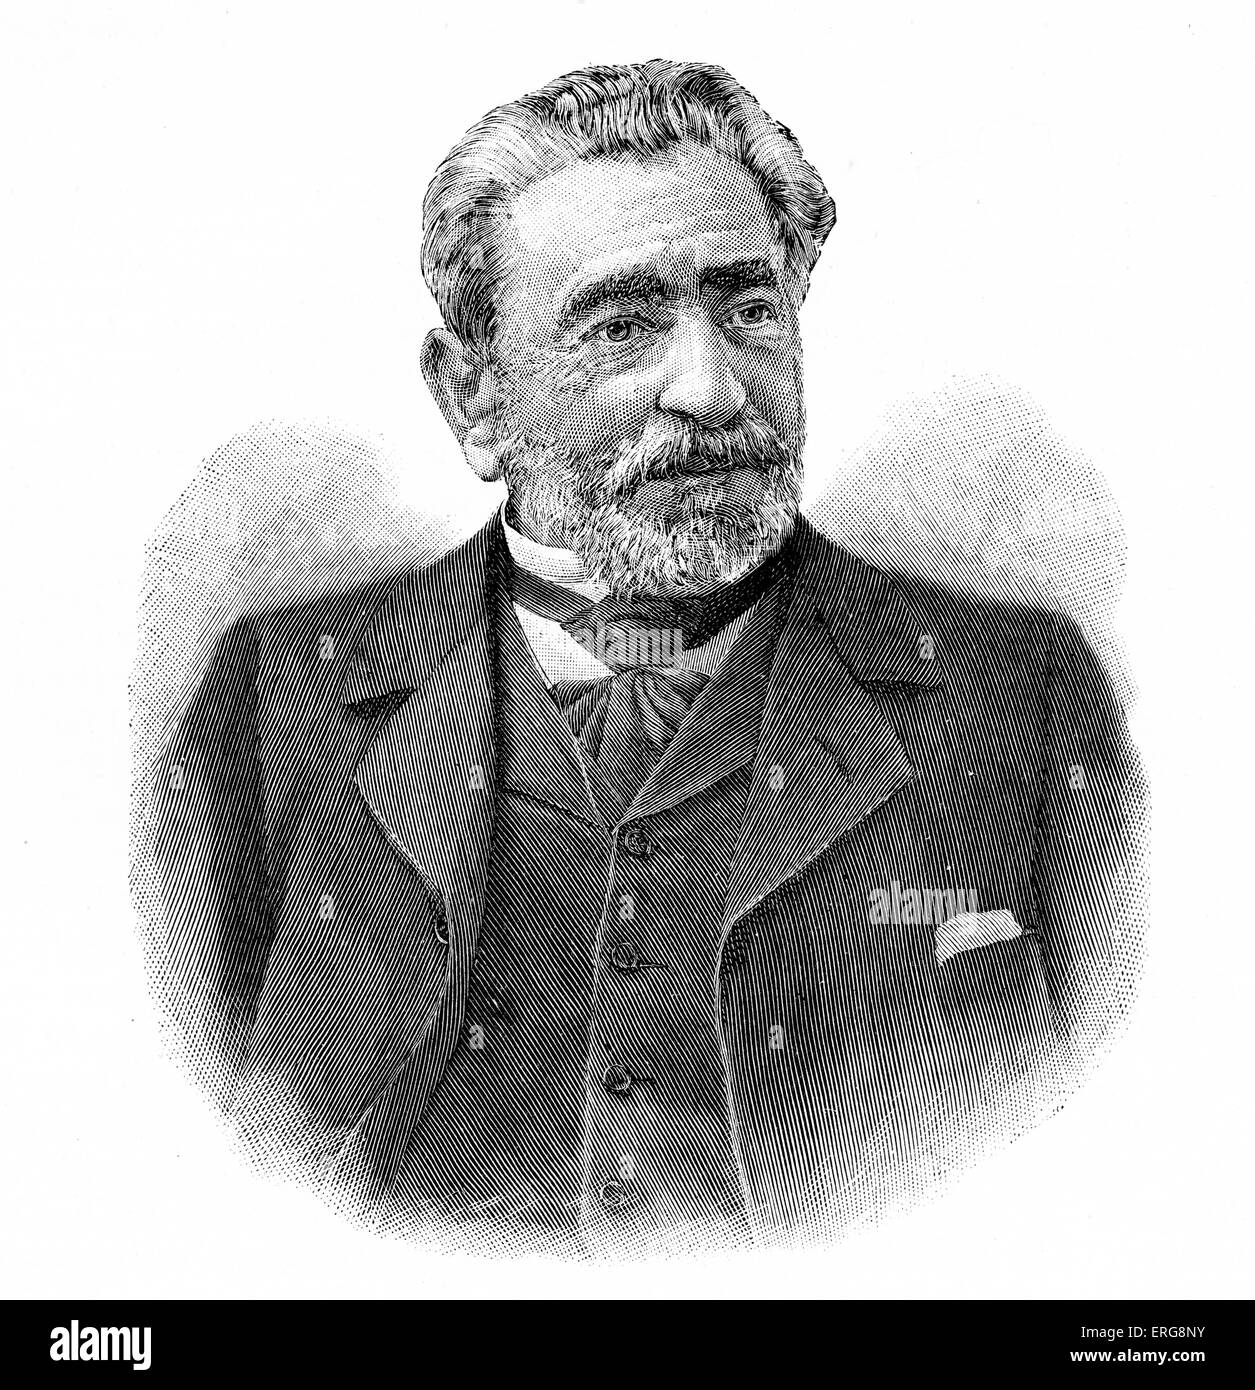 Senor Sagasta, spanische Ministerpräsident von 1870-1902.  Práxedes Mateo Sagasta y Escolar: b. 21. Juli 1825 - d. 5. Januar 1903. Stockfoto